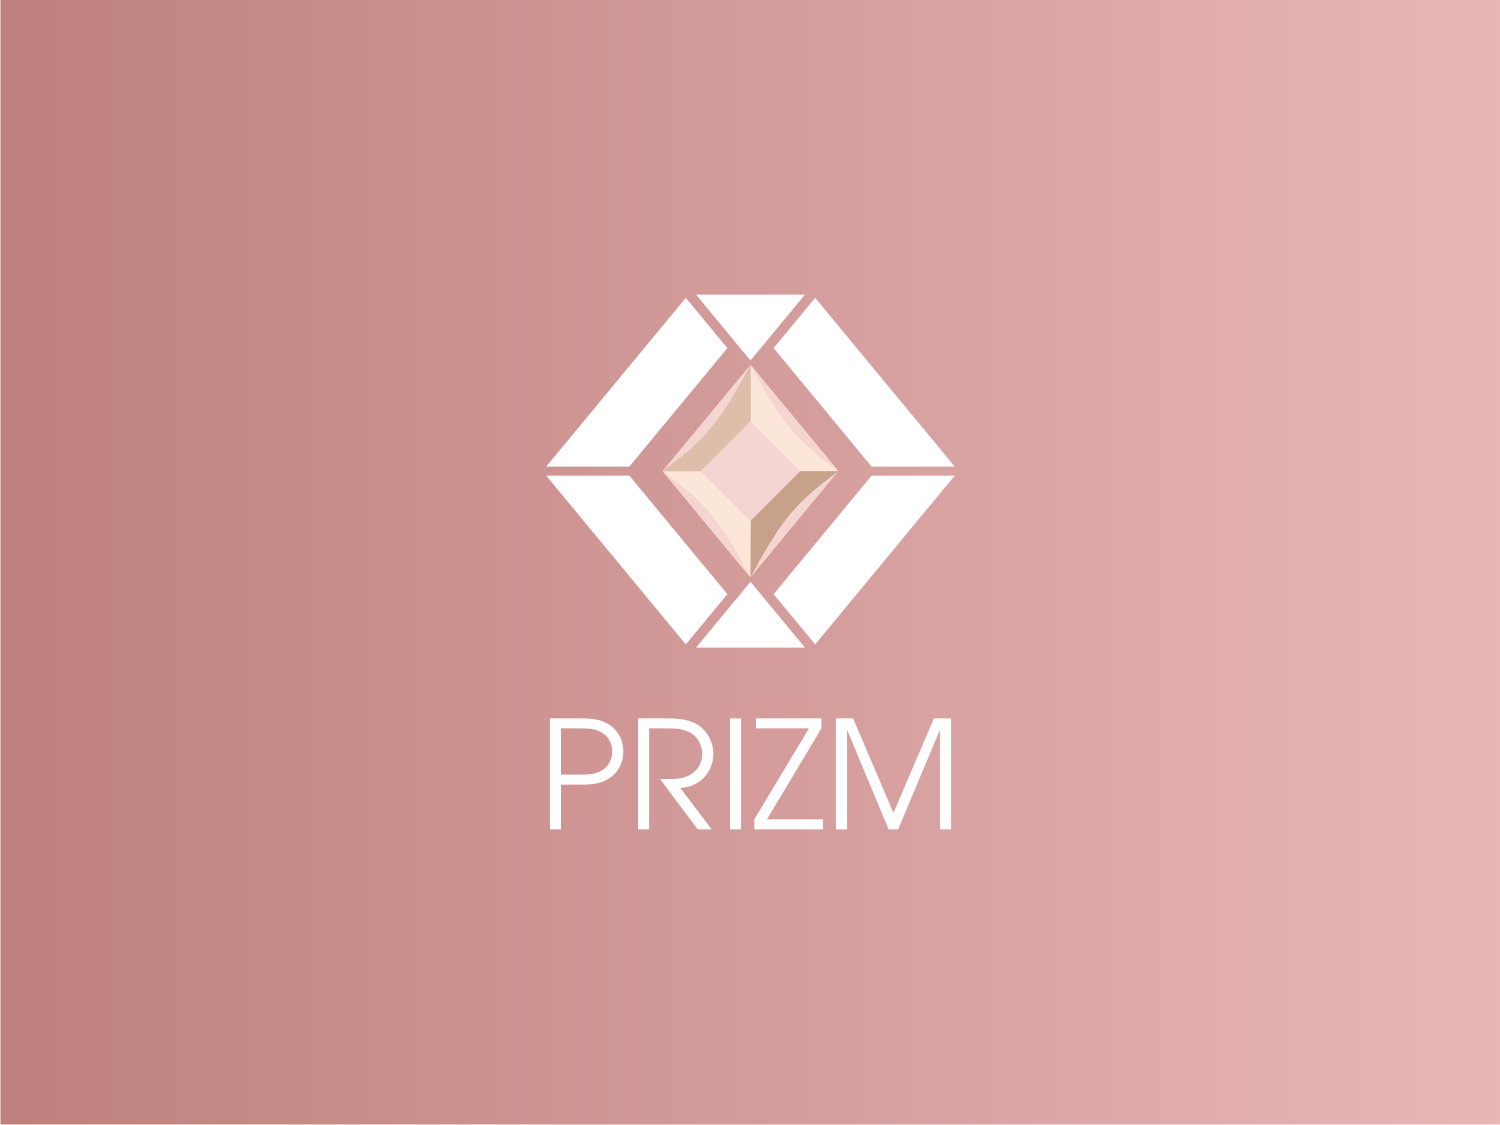 Prizm Logo - Modern, Professional Logo Design for Prizm or Prizm Co or Prizm ...